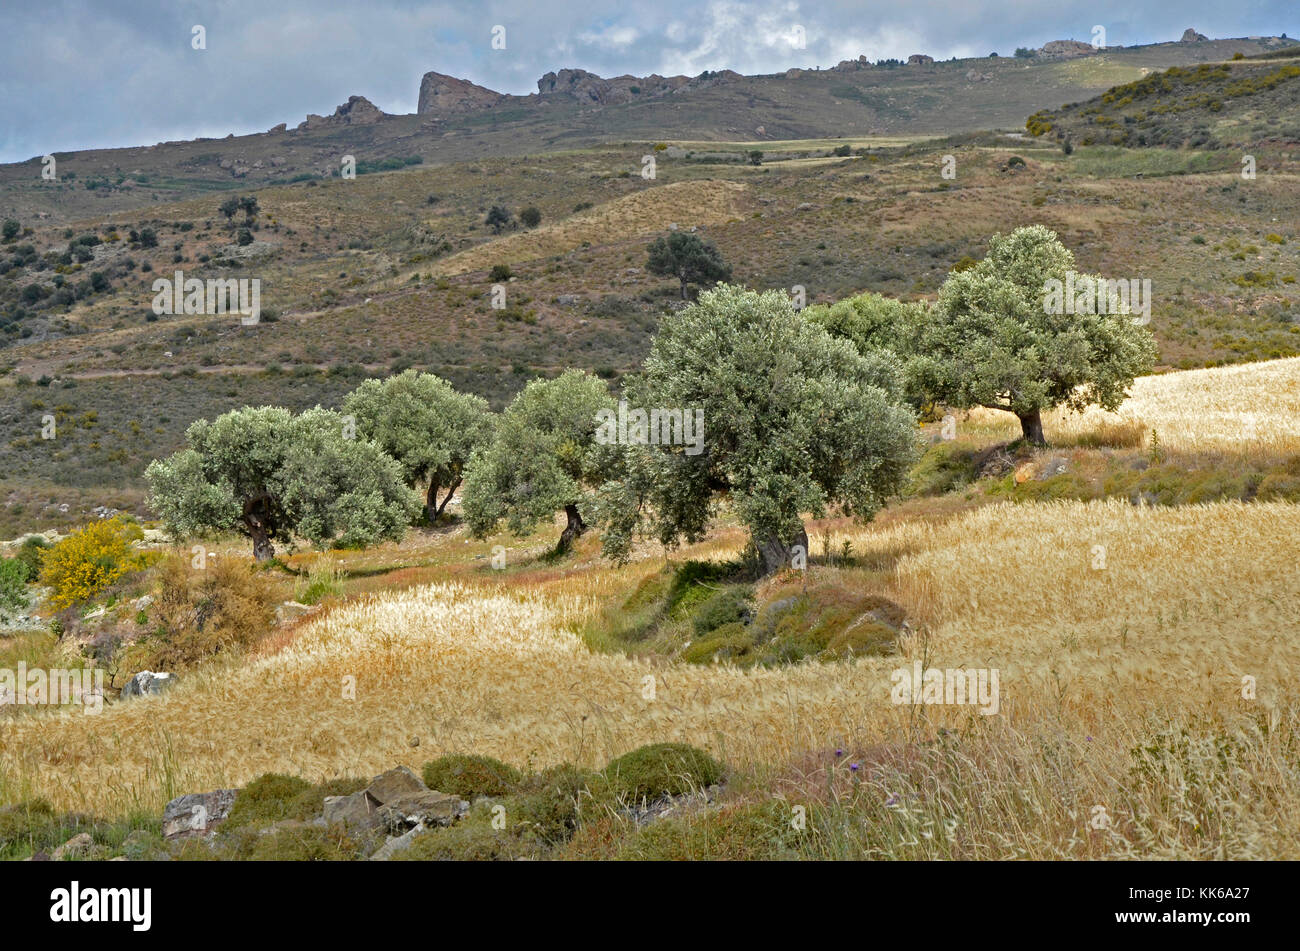 Il selvaggio e aspro paesaggio di akamas area di conservazione paphos cipro con alberi di olivo e piccoli campi di grano rendendo difficoltosa l'agricoltura, Foto Stock